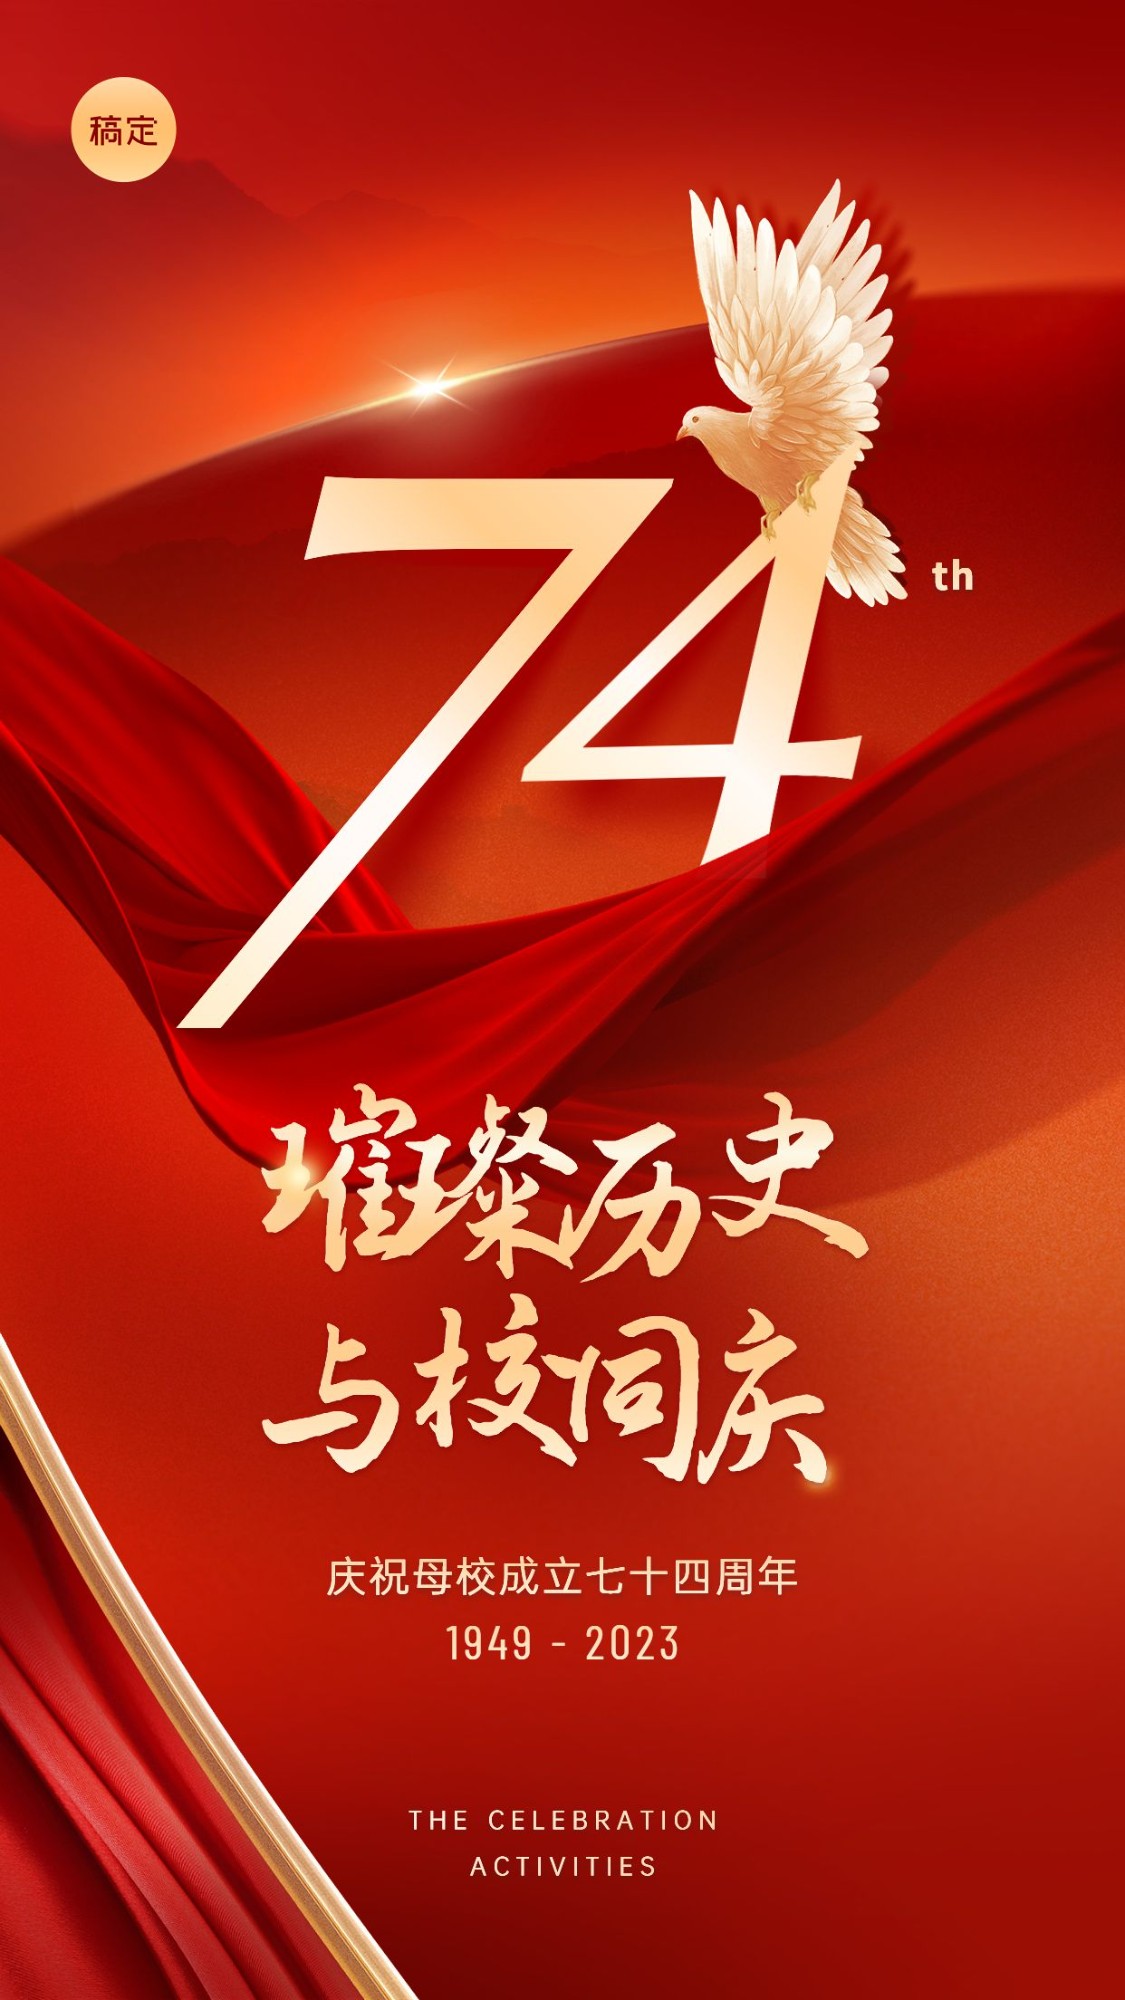 国庆节节日祝福手机海报